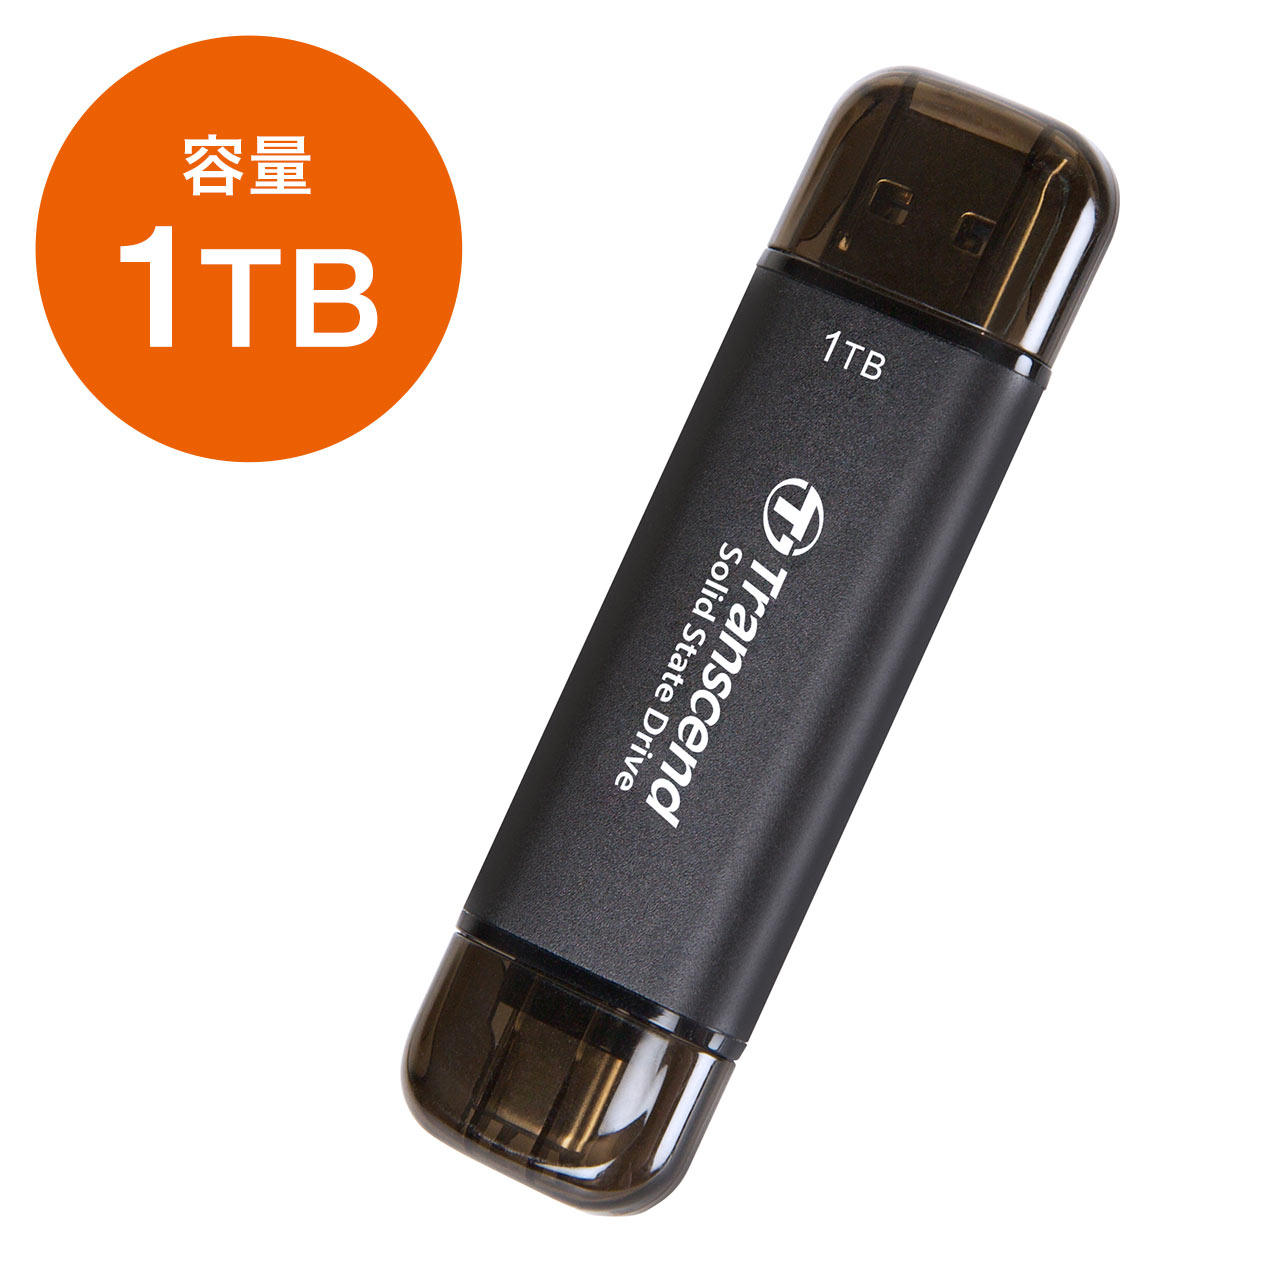 トランセンド ポータブルSSD 512GB 高速 最大1050 MB/s 超小型,軽量11g